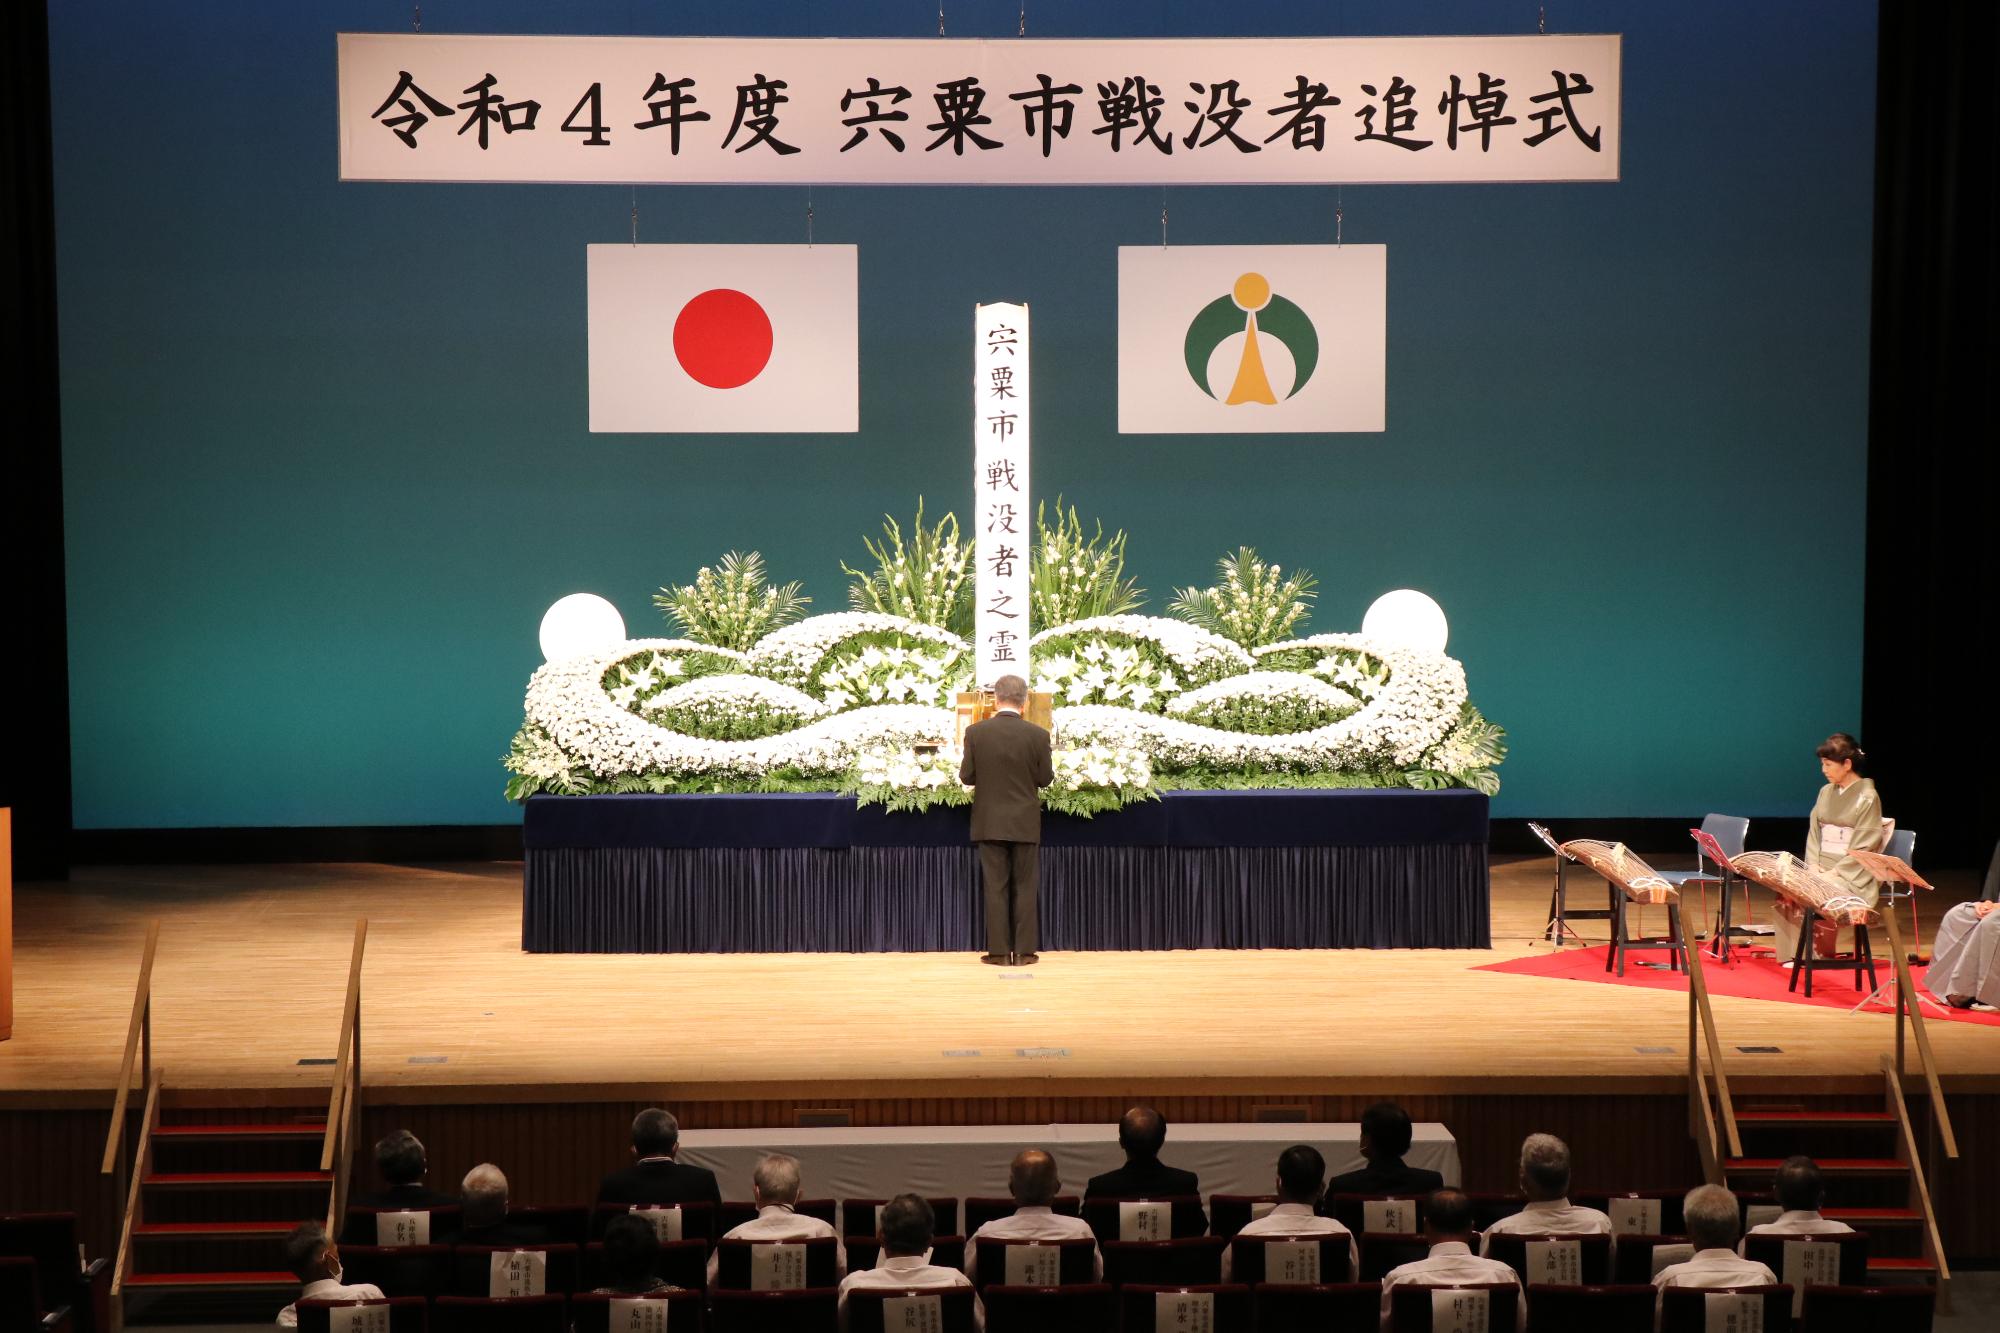 山崎文化会館で開かれた戦没者追悼式で戦没者に哀悼の意を表し、恒久平和を祈る参列者ら